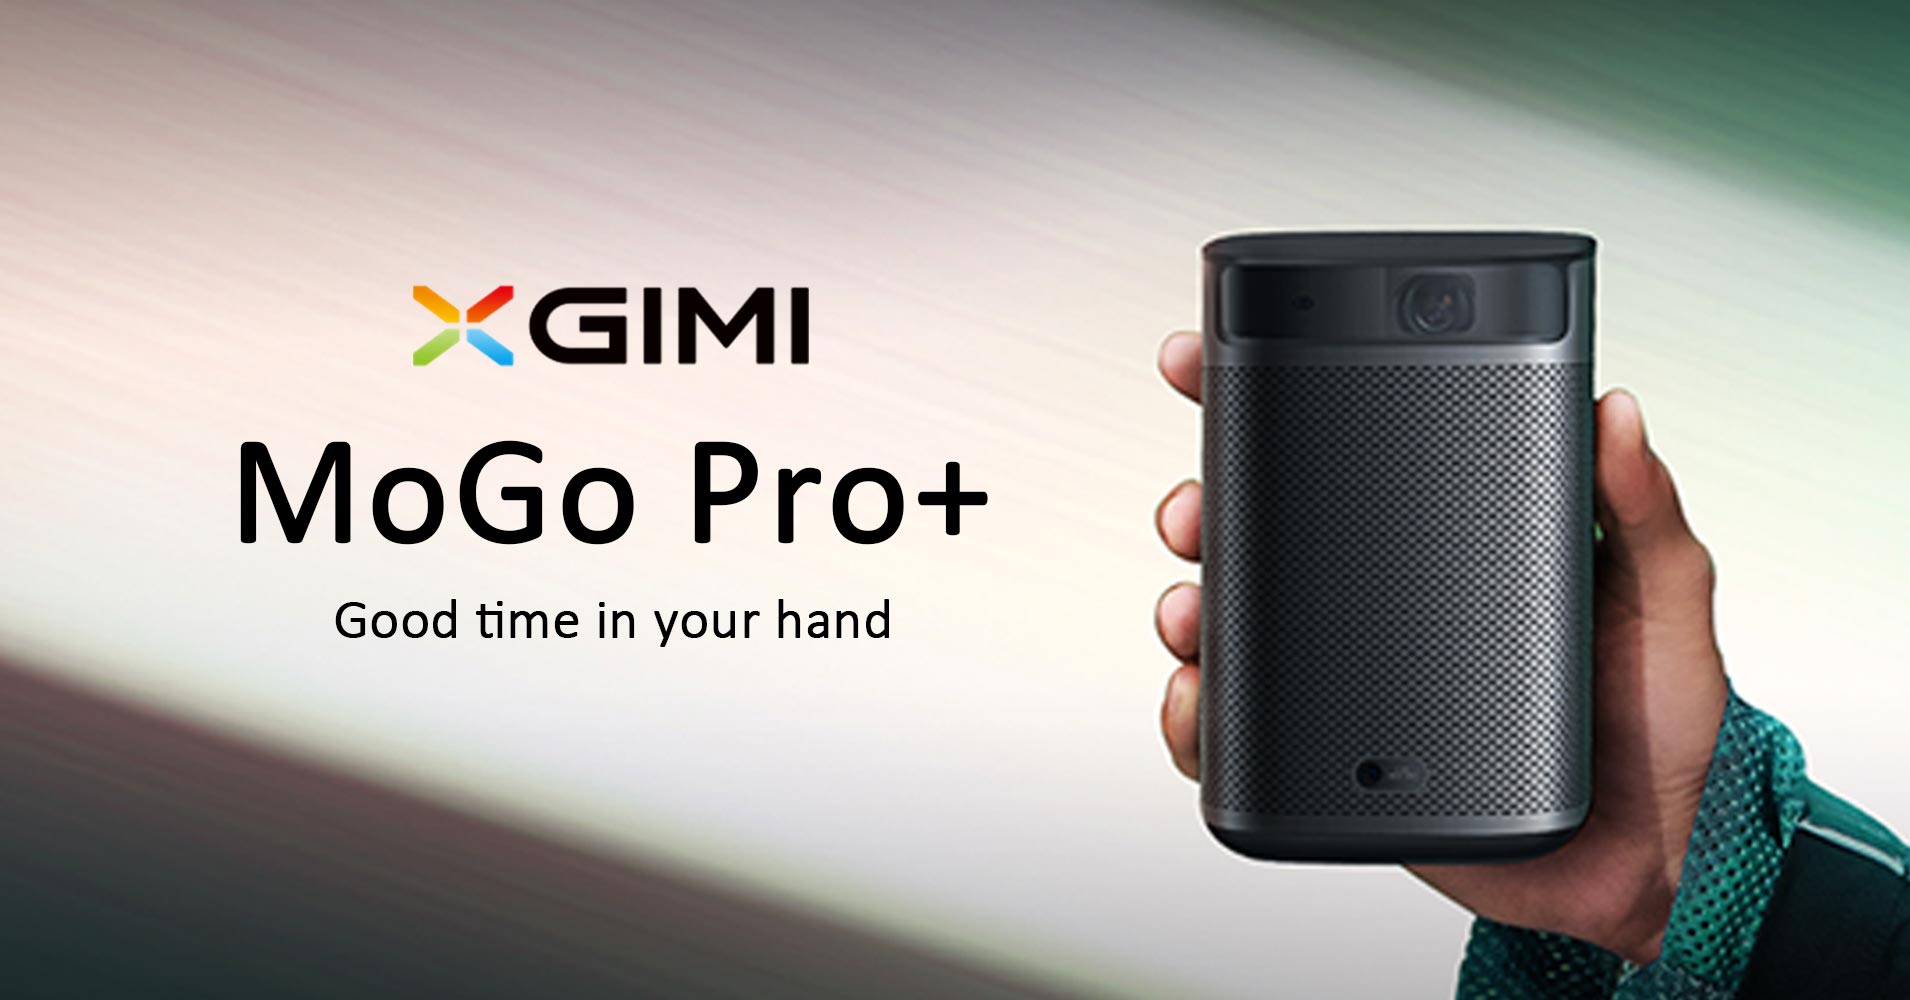 XGIMI MoGo Pro+ モバイルプロジェクター キャリングケース付き！ www 